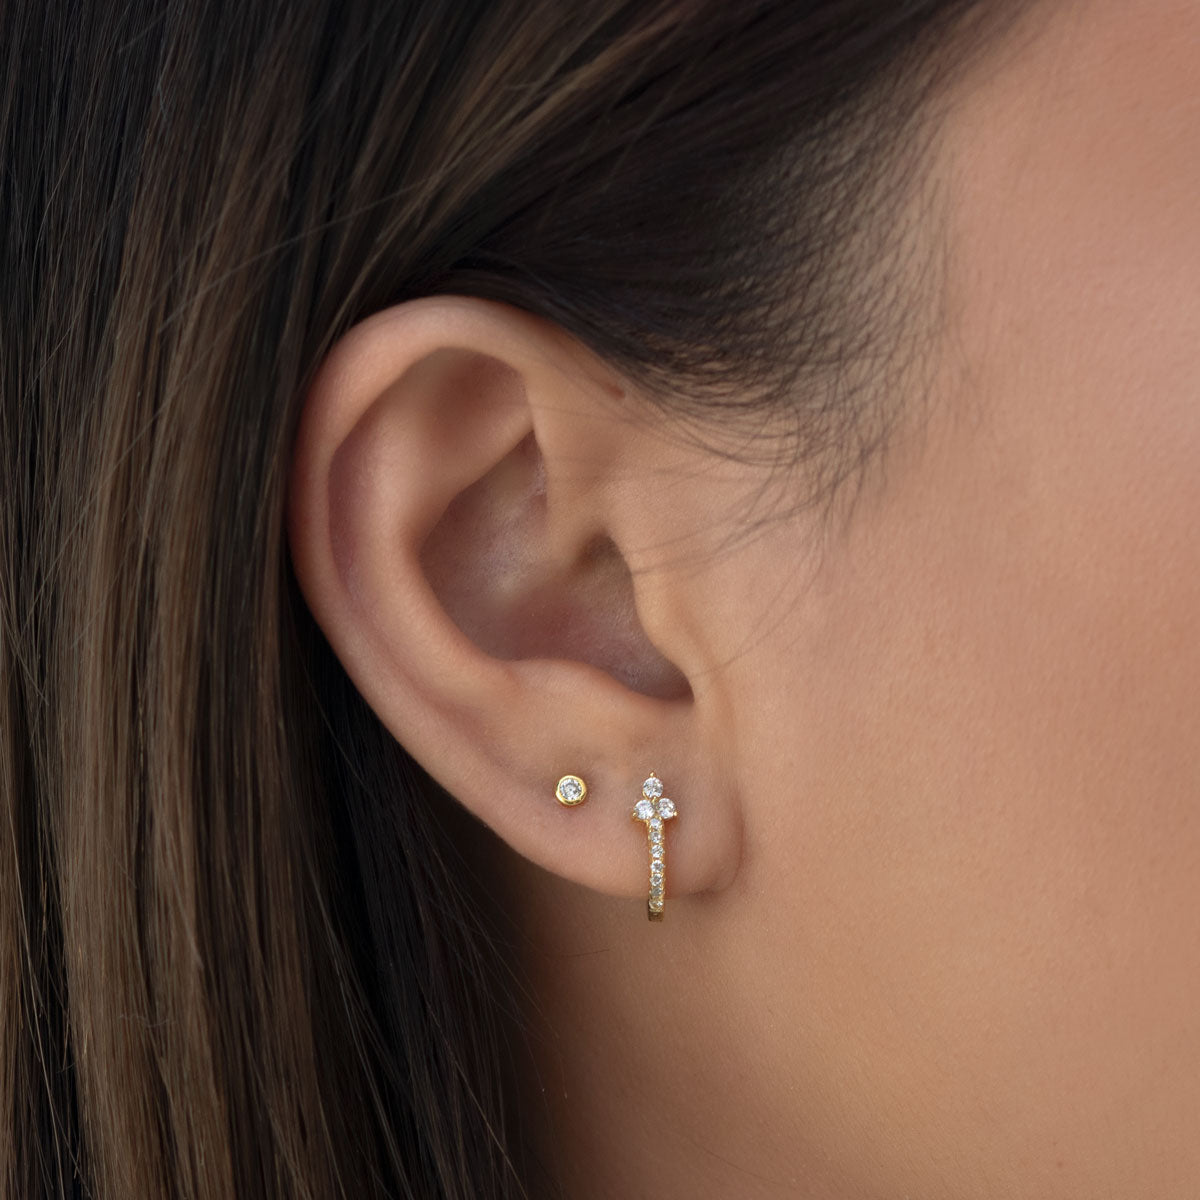 Bezel Earring Studs, Hypoallergenic Earring Studs, Tiny Stud Earrings, Stud  Earrings, Minimalist Earrings, Diamond Stud Earrings, Gold Studs 